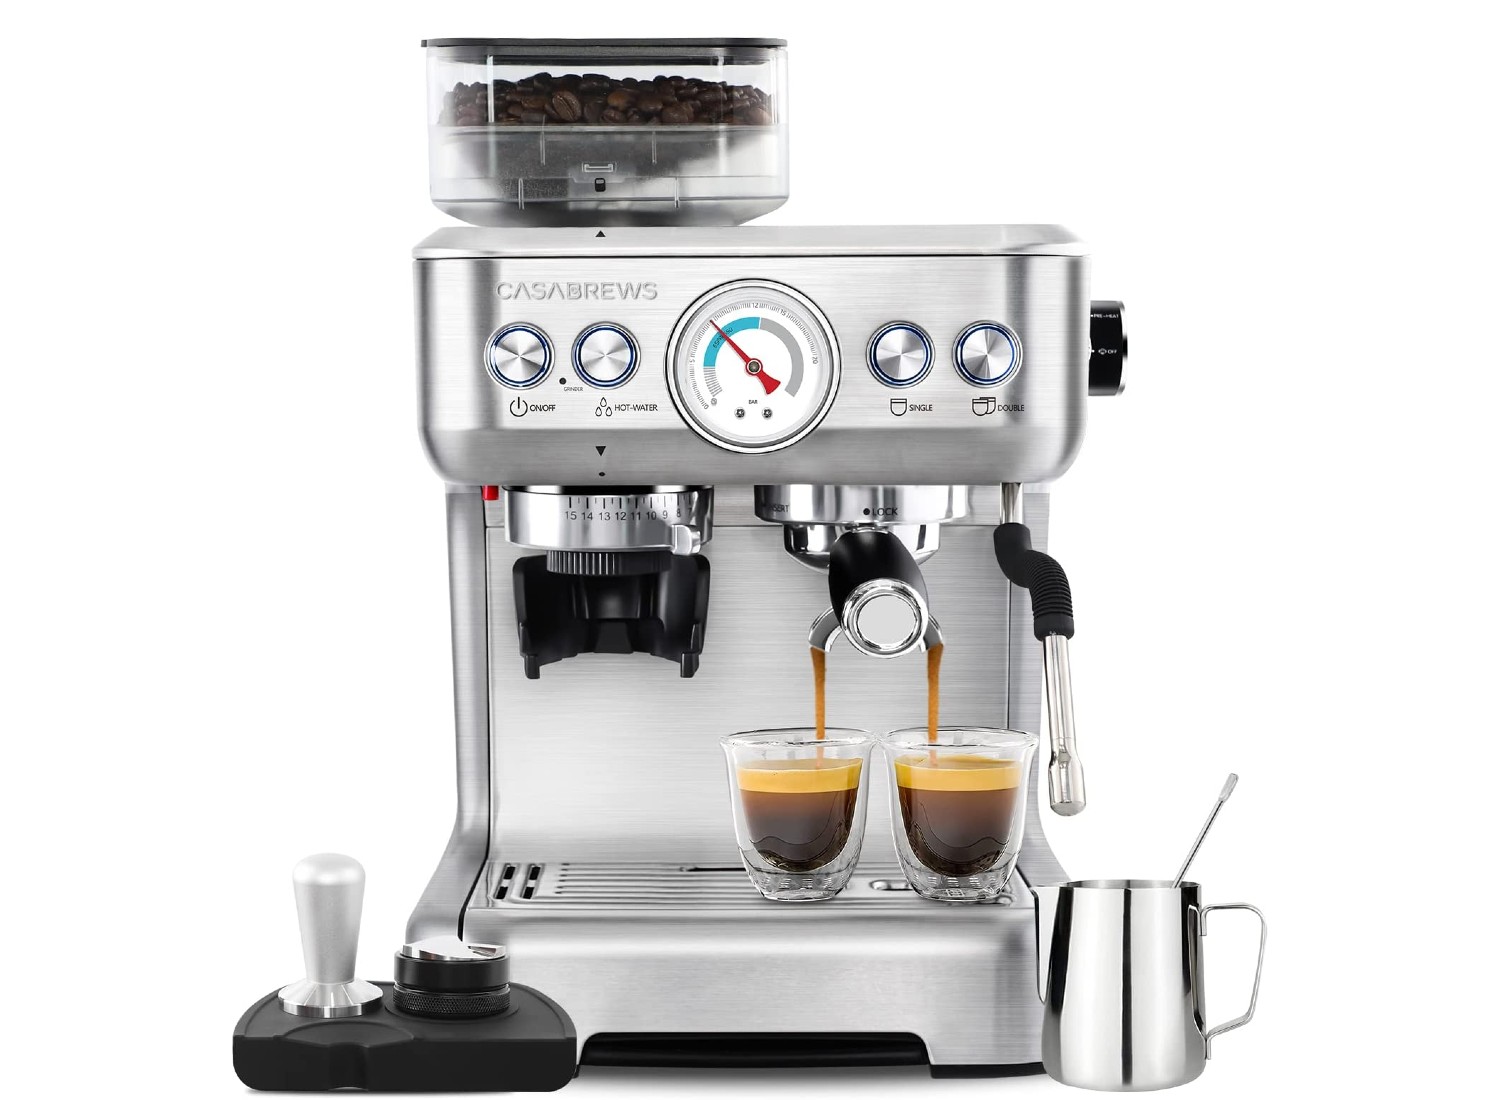 CASABREWS Espresso Machine with Grinder